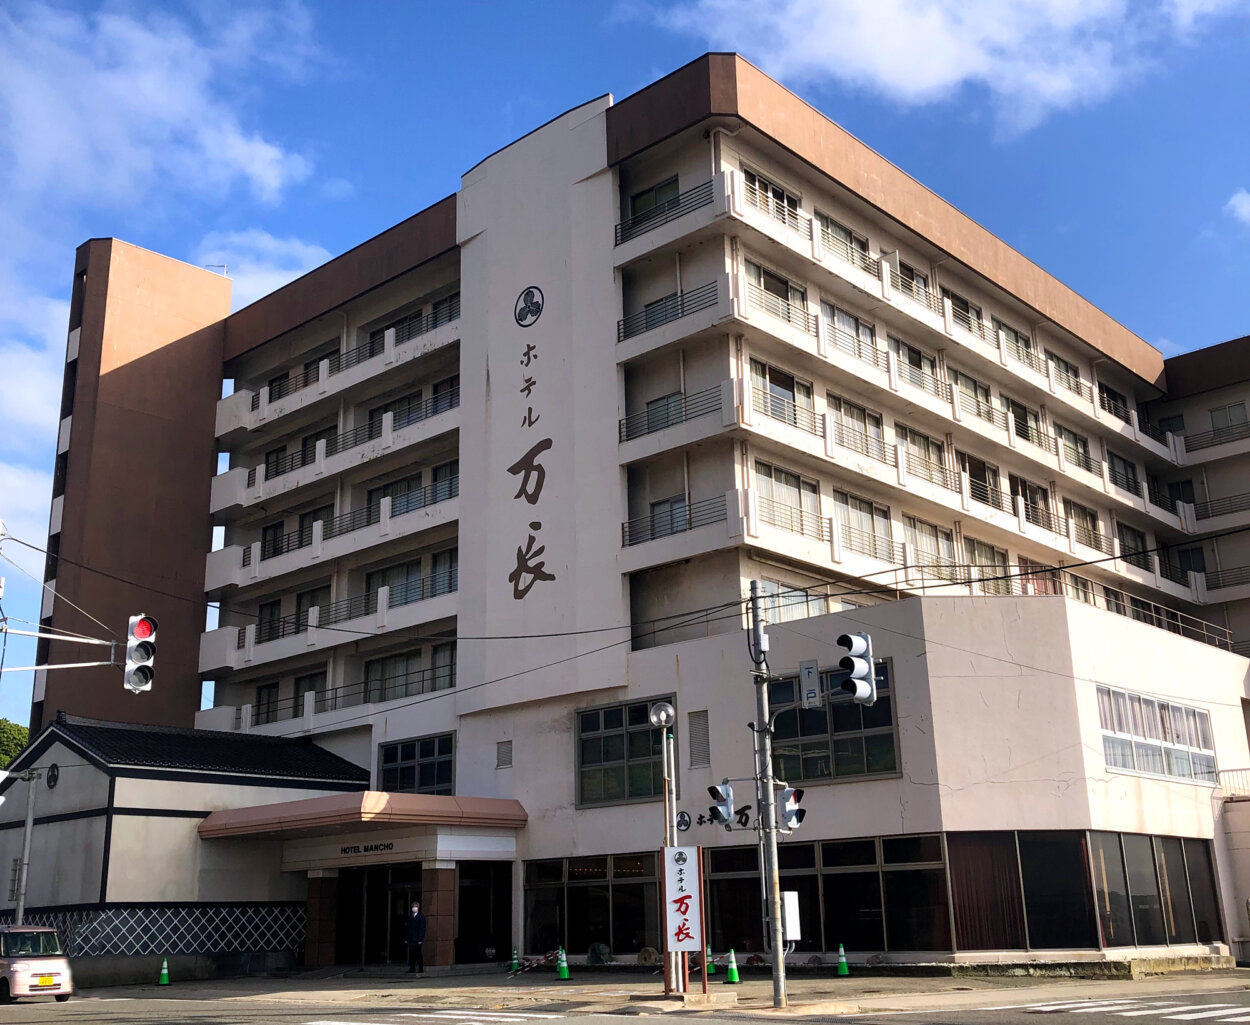 宿泊は「ホテル万長」。相川地区にある老舗ホテルだ